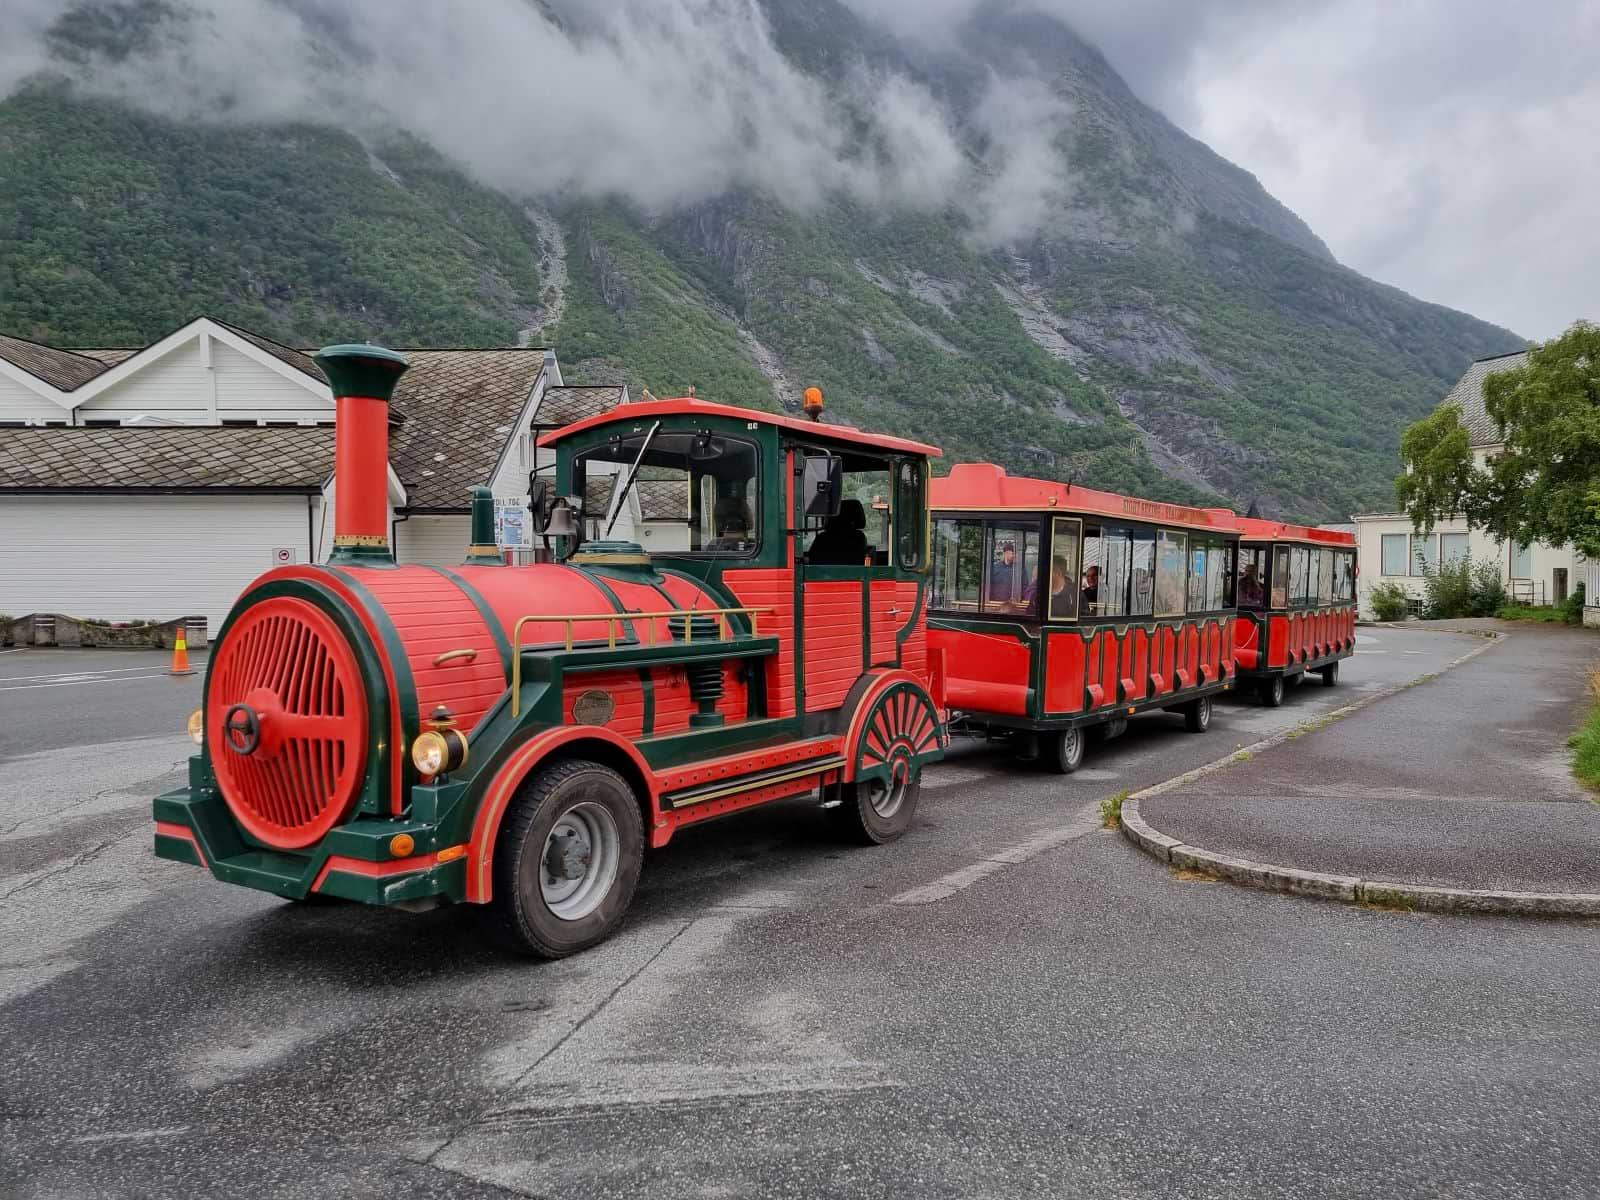 Rot-grüner Minizug auf Rädern (der Trolltrain), geparkt in Eidfjord.